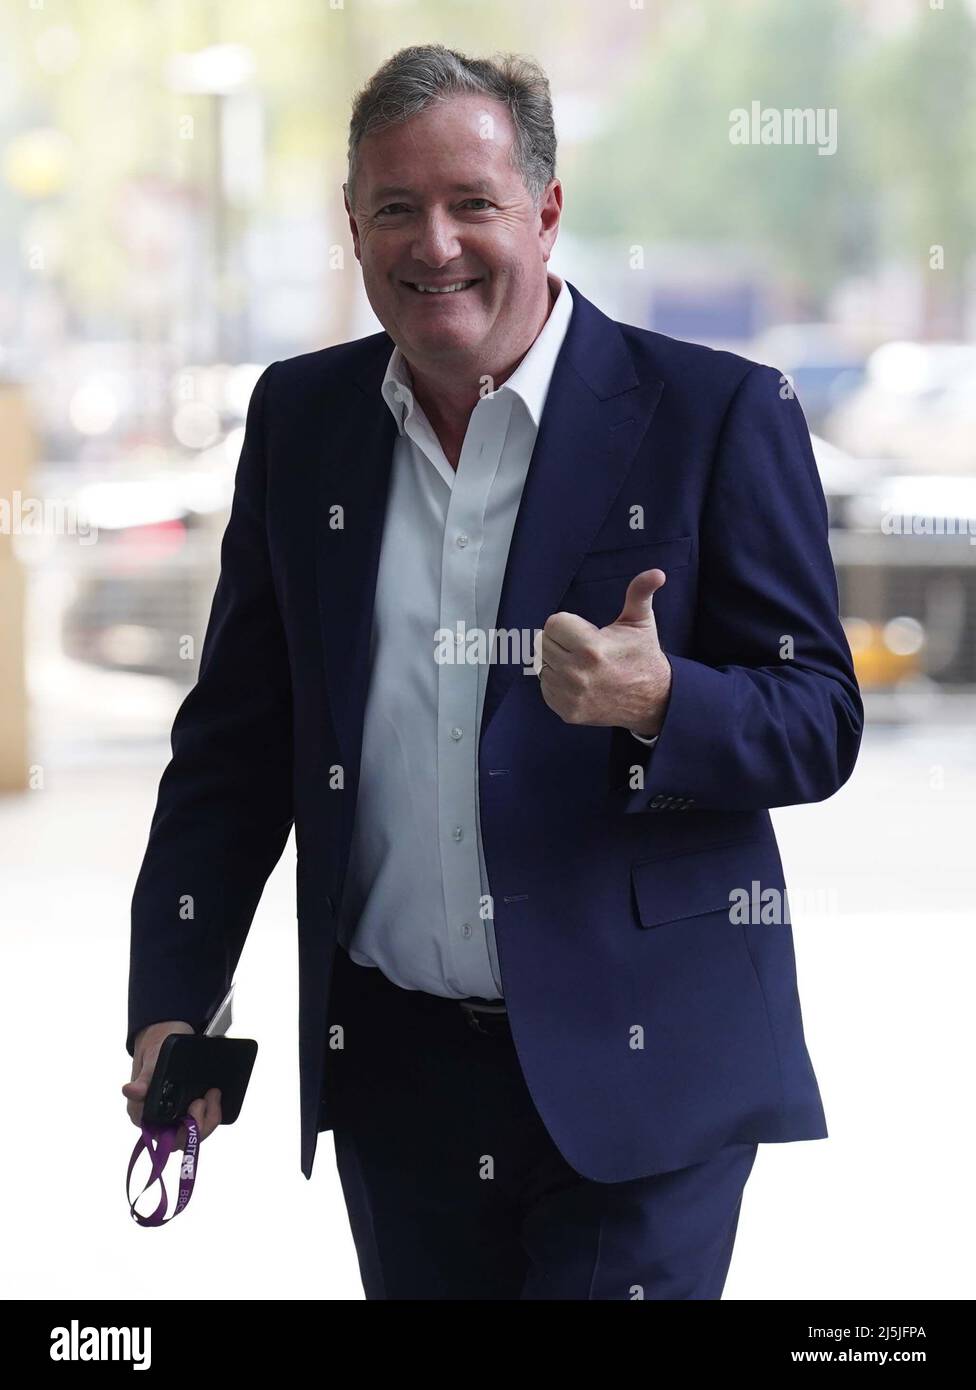 Piers Morgan arrive à la BBC Broadcasting House à Londres, pour apparaître sur le programme d'affaires courantes de BBC One, dimanche matin sous l'égide de Sophie Raworth. Date de la photo: Dimanche 24 avril 2022. Banque D'Images